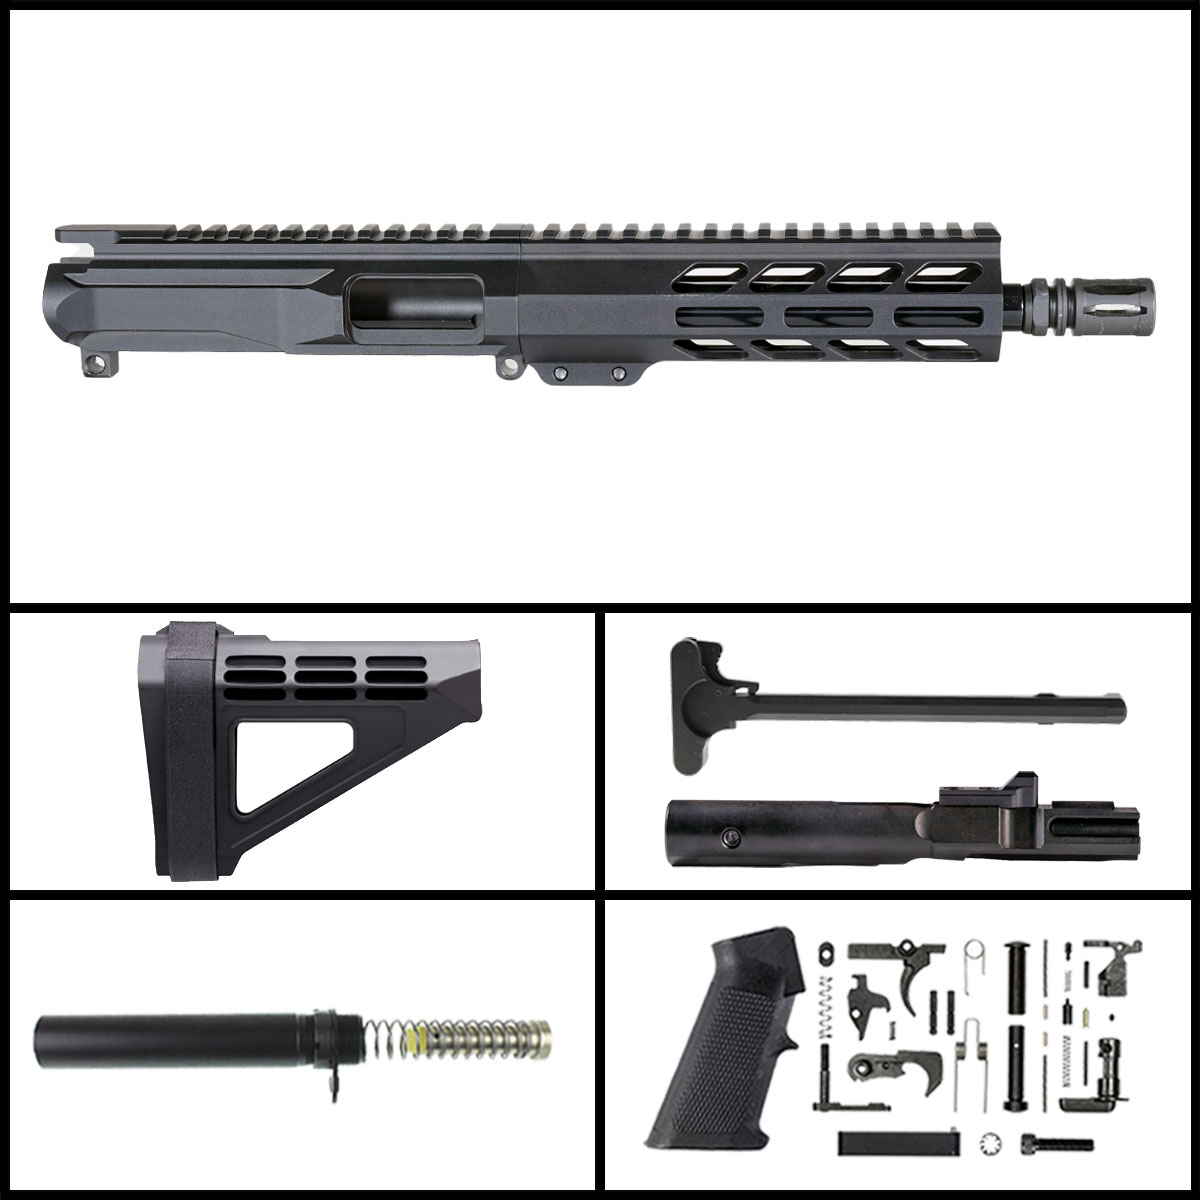 OTD 'Eternal Night Gen 2' 8.5-inch AR-15 9mm Nitride Pistol Full Build Kit